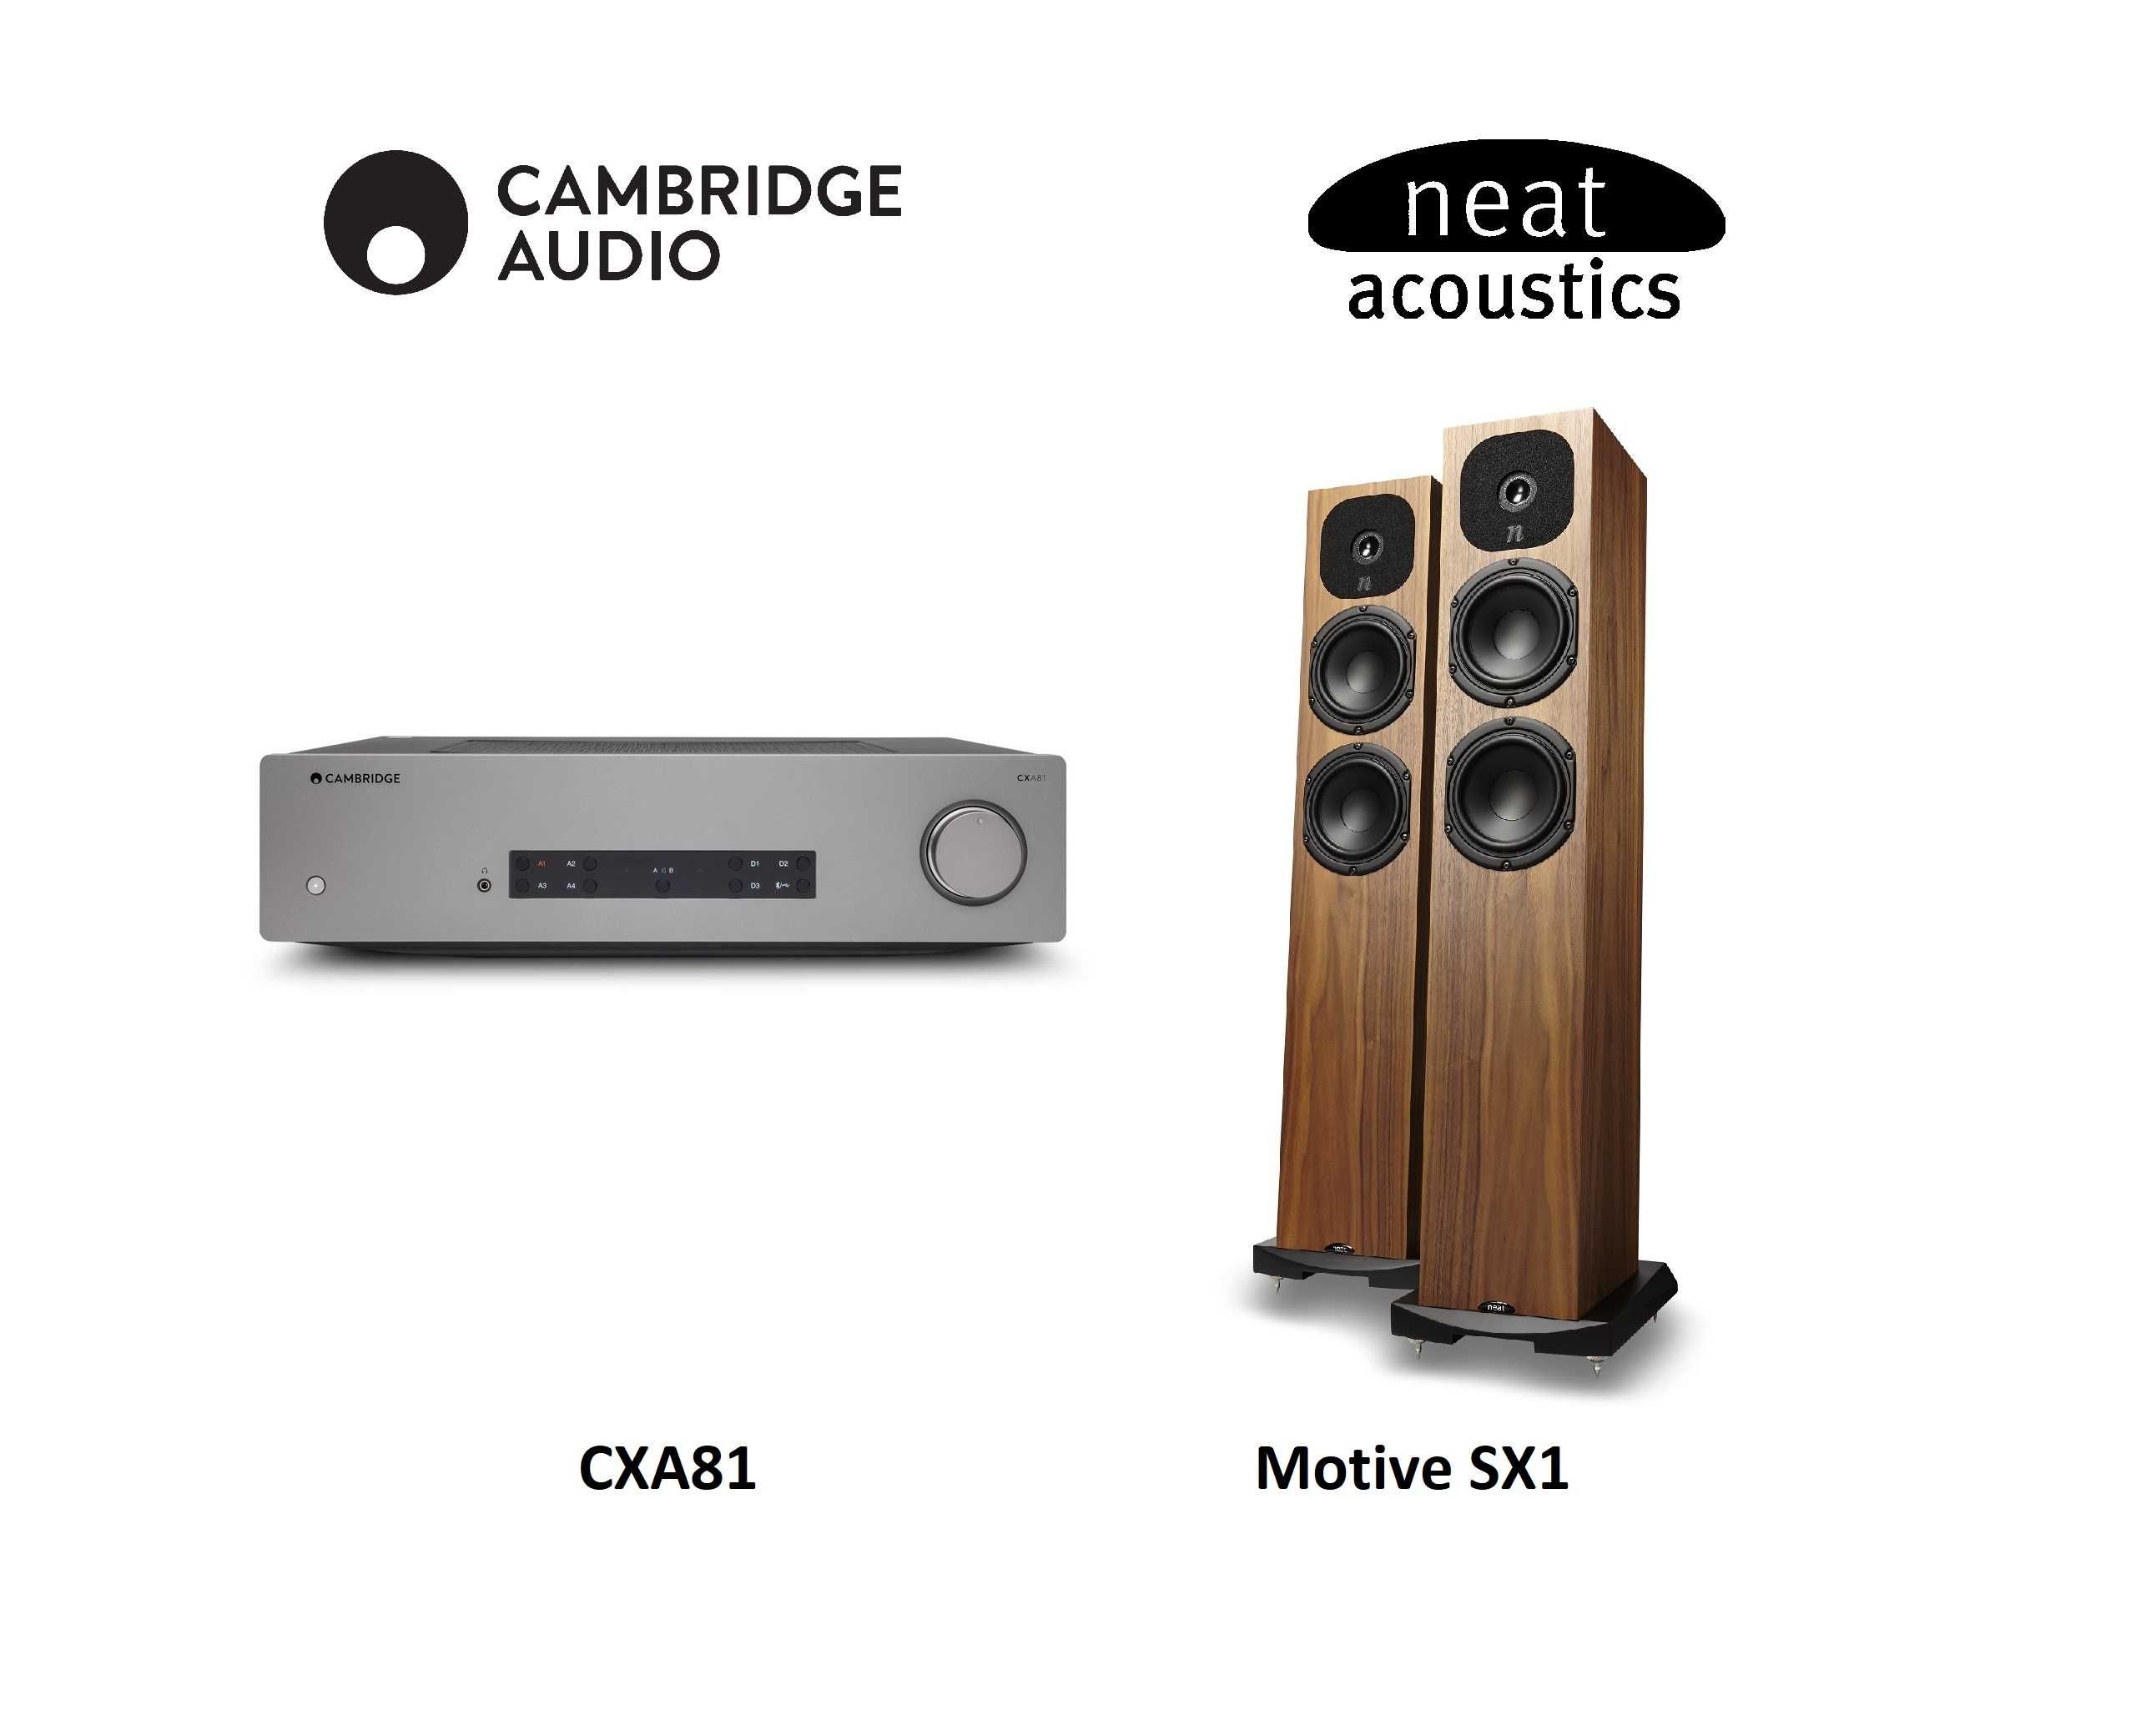 Wzmacniacz Cambridge Audio CXA81 Neat Acoustics Motive SX1 RATY 0%